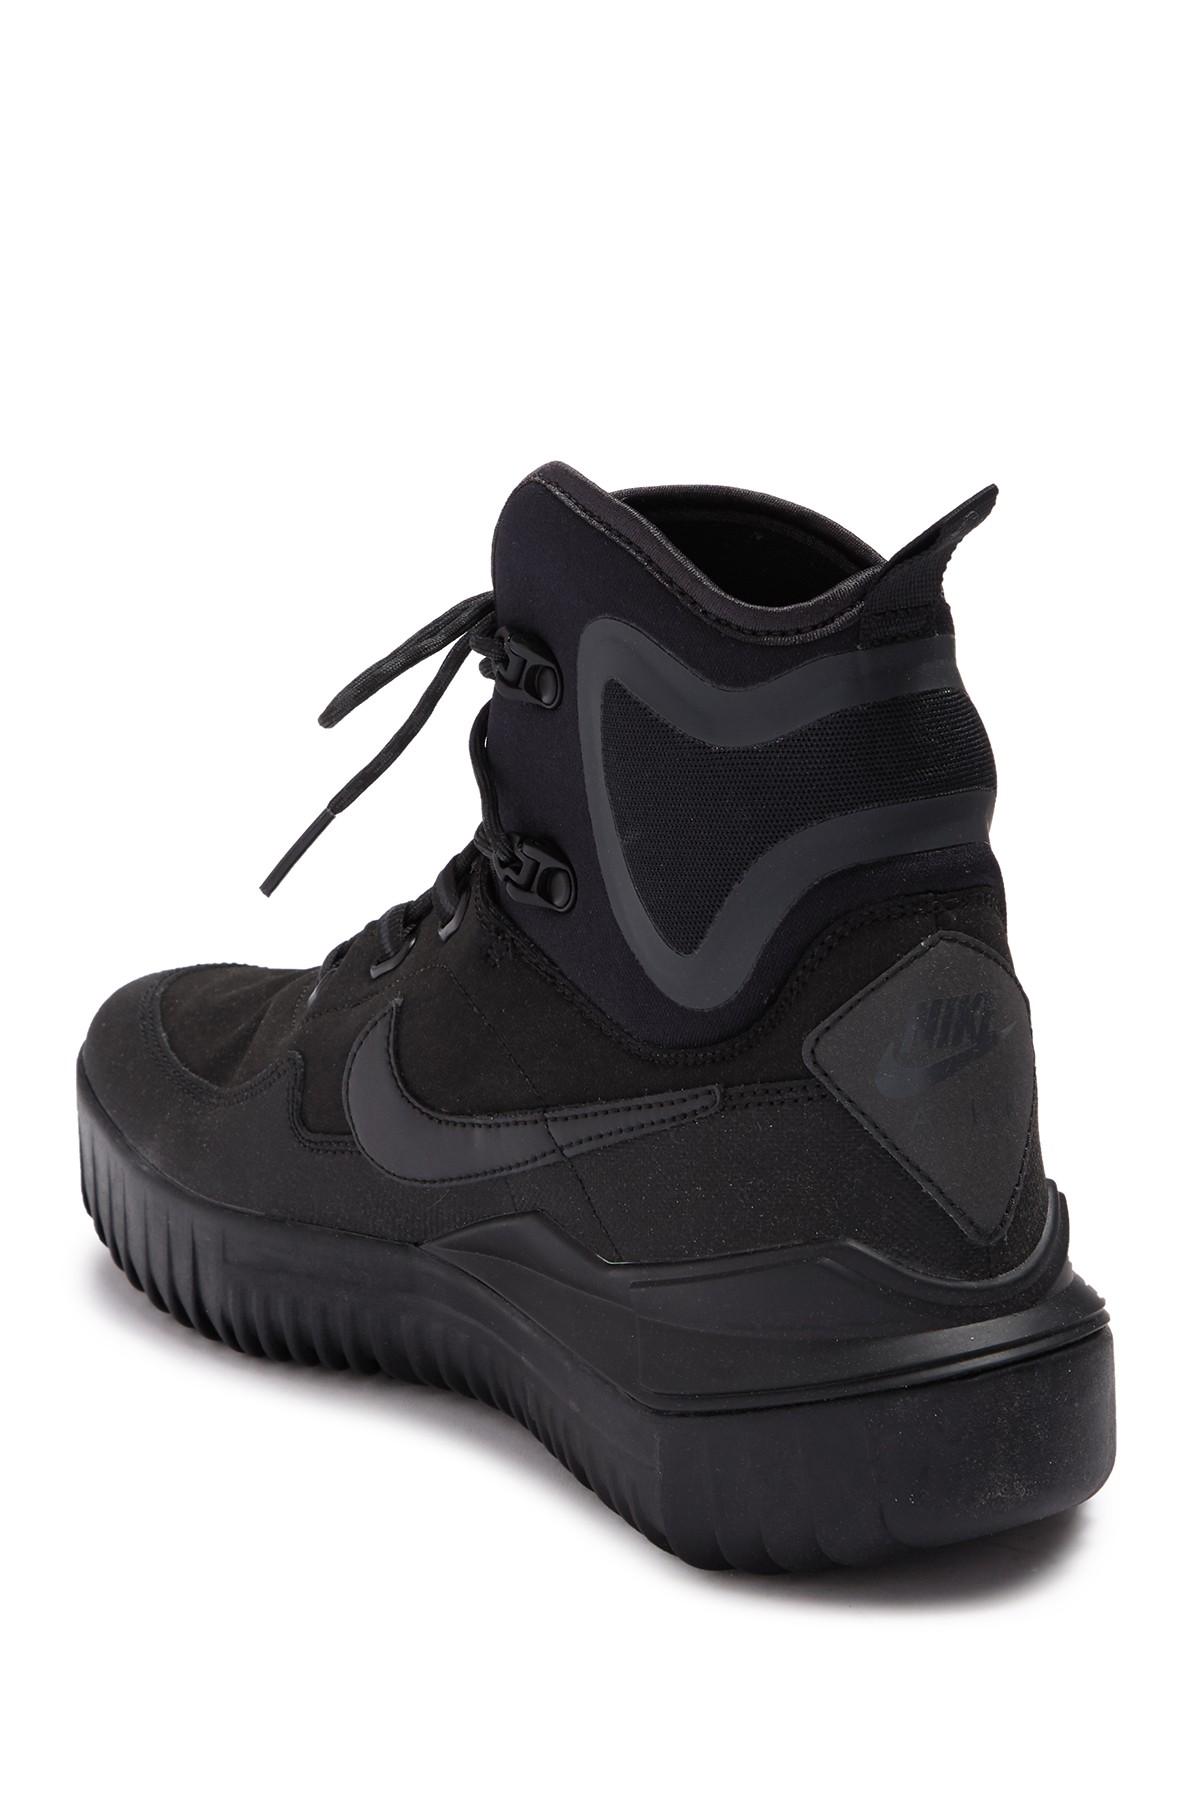 Nike Neoprene Air Wild Mid Sneaker in 7.5 (Black) for Men - Lyst